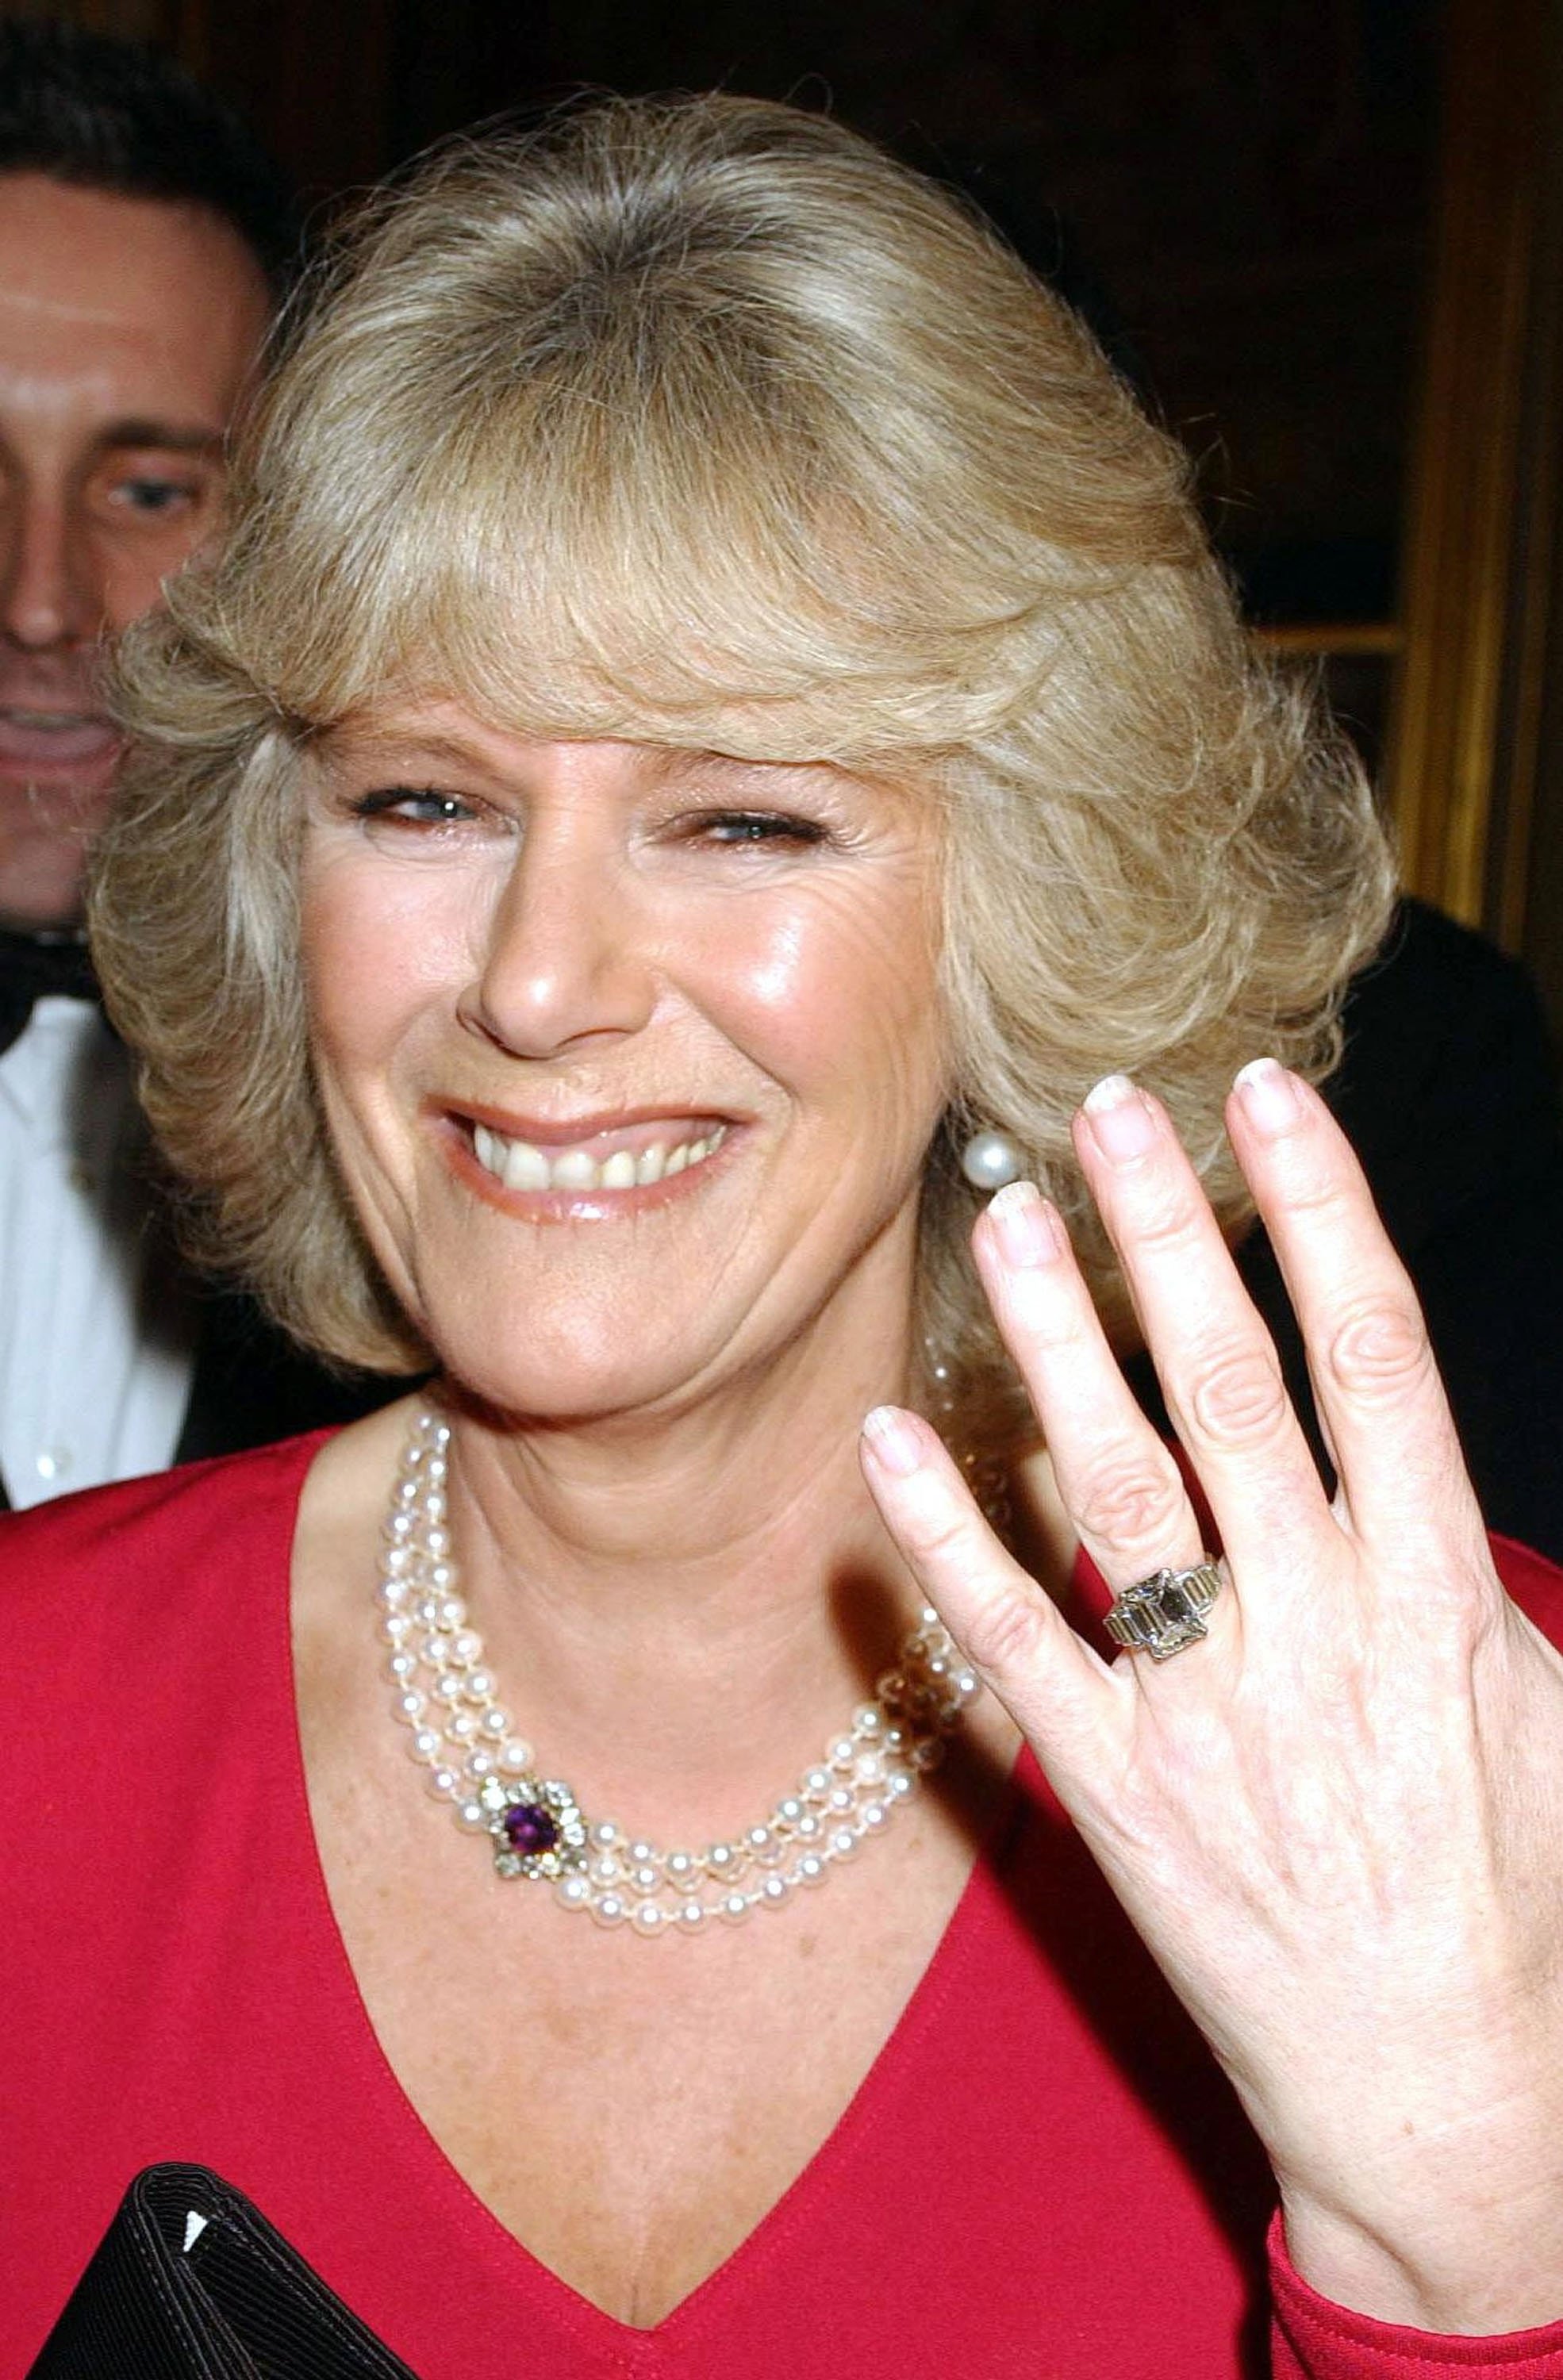 Camilla Parker Bowles montrant sa bague de fiançailles à son arrivée à une fête au château de Windsor le 10 février 2005 à Windsor, Angleterre | Source : Getty Images